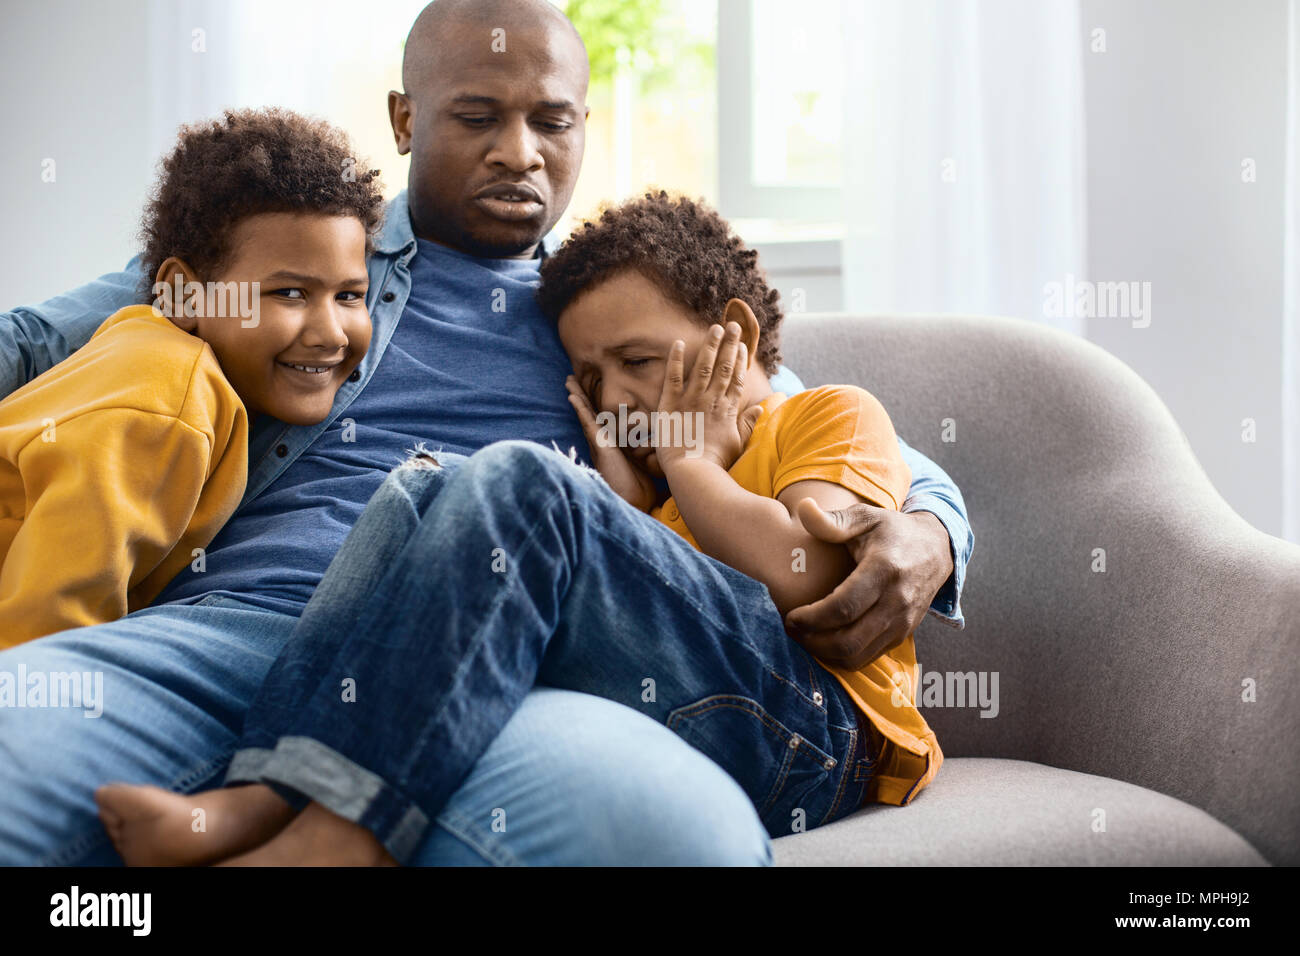 Caring giovane padre consolante suo figlio di pianto Foto Stock